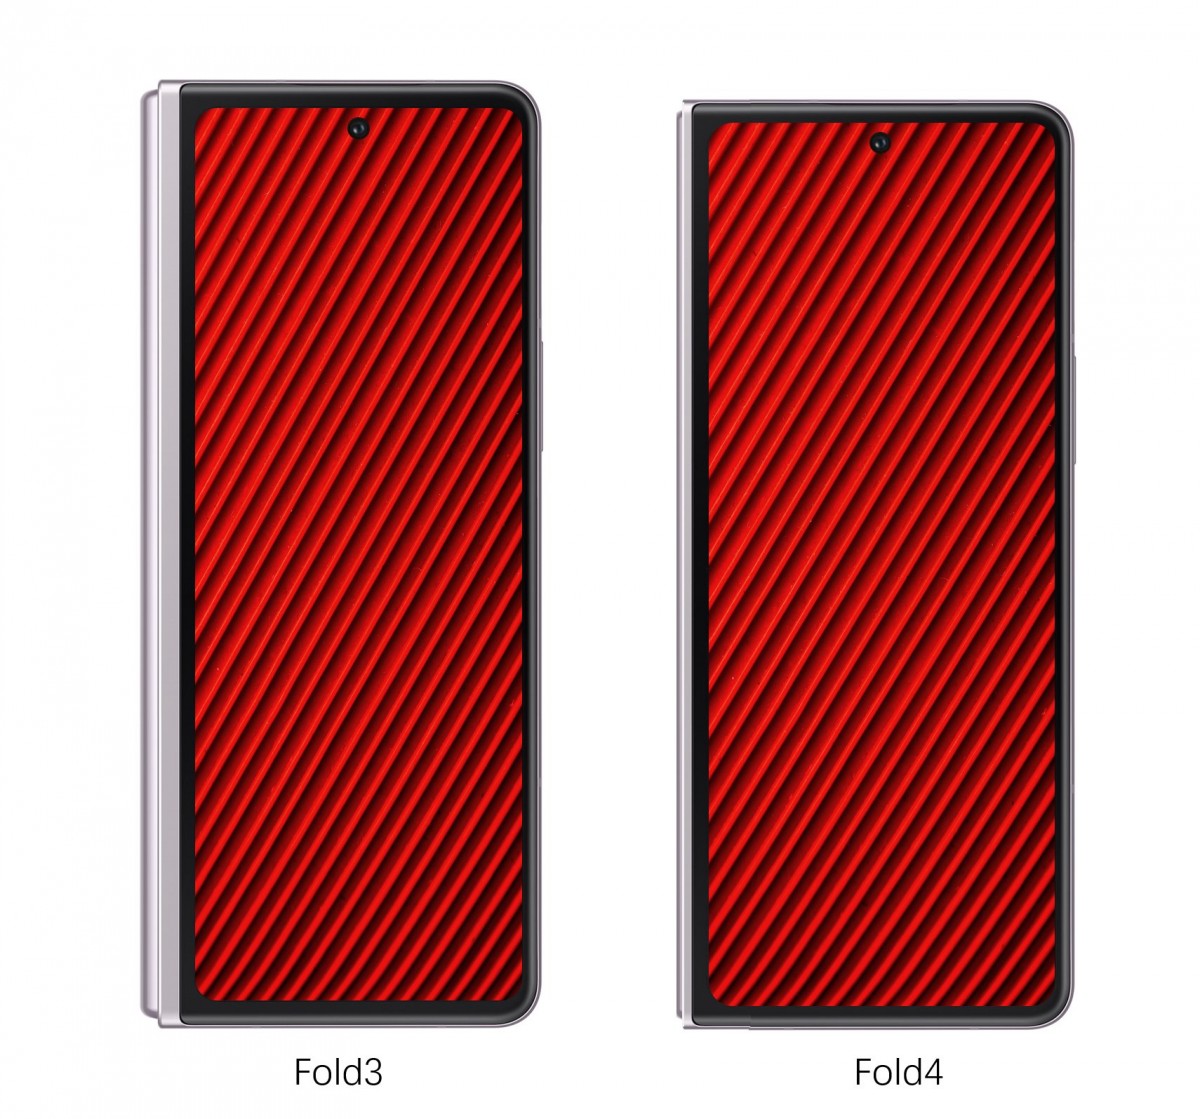 O Galaxy Z Fold4 terá uma proporção de squatter em comparação com seu antecessor